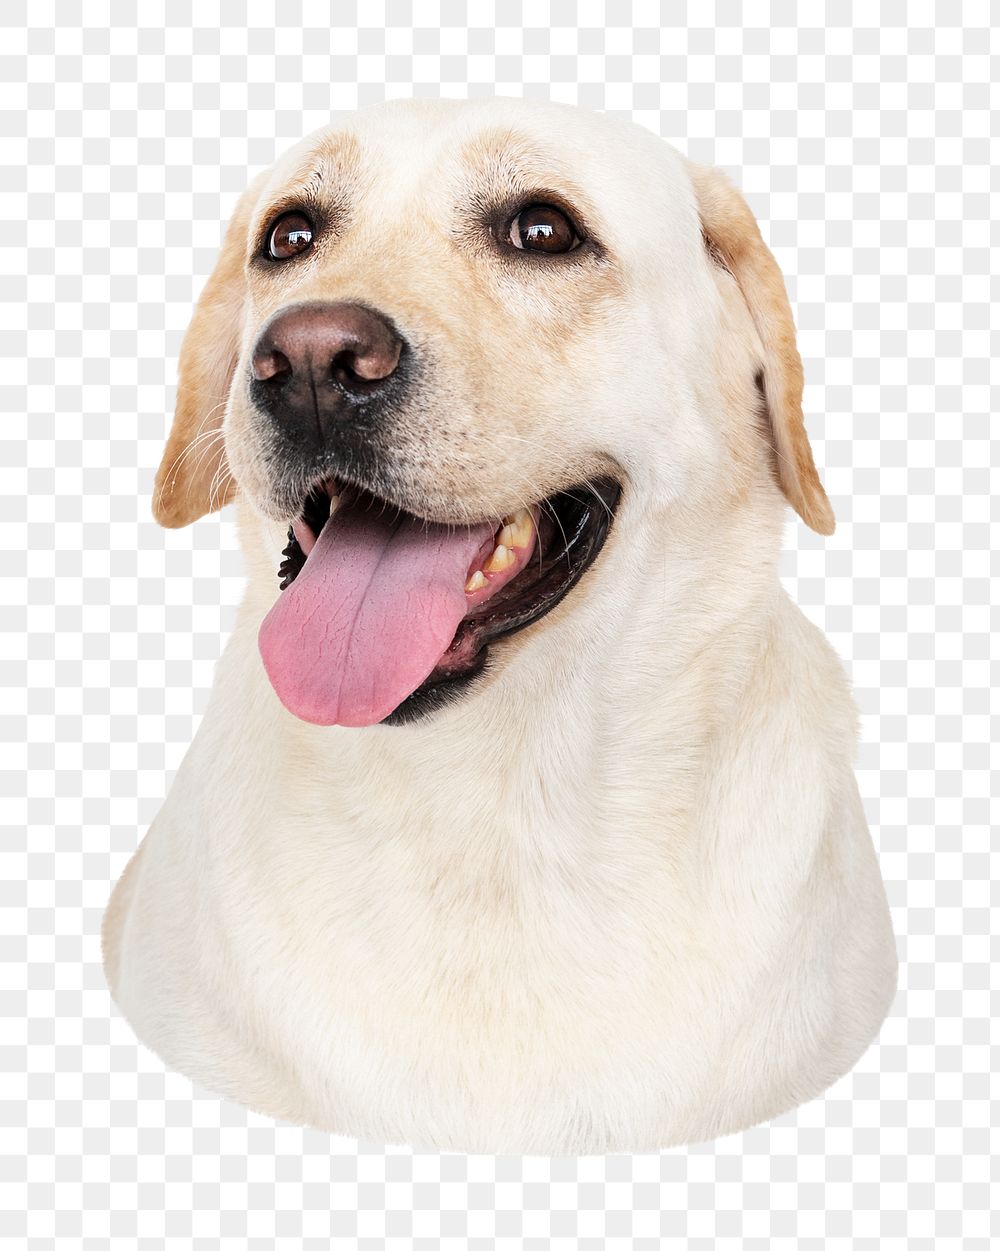 Labrador Retriever dog png sticker, transparent background